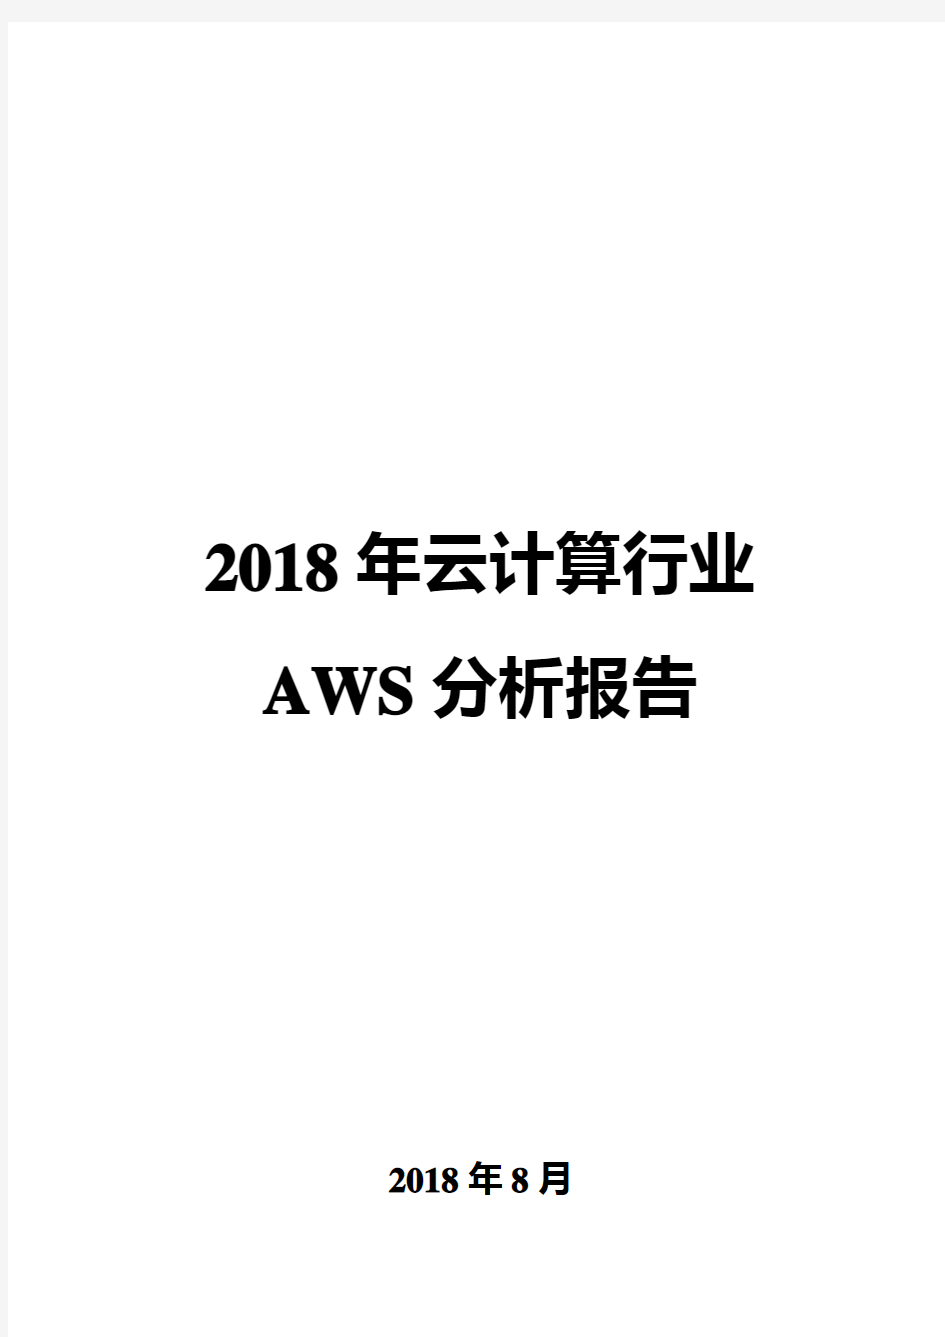 2018年云计算行业AWS分析报告